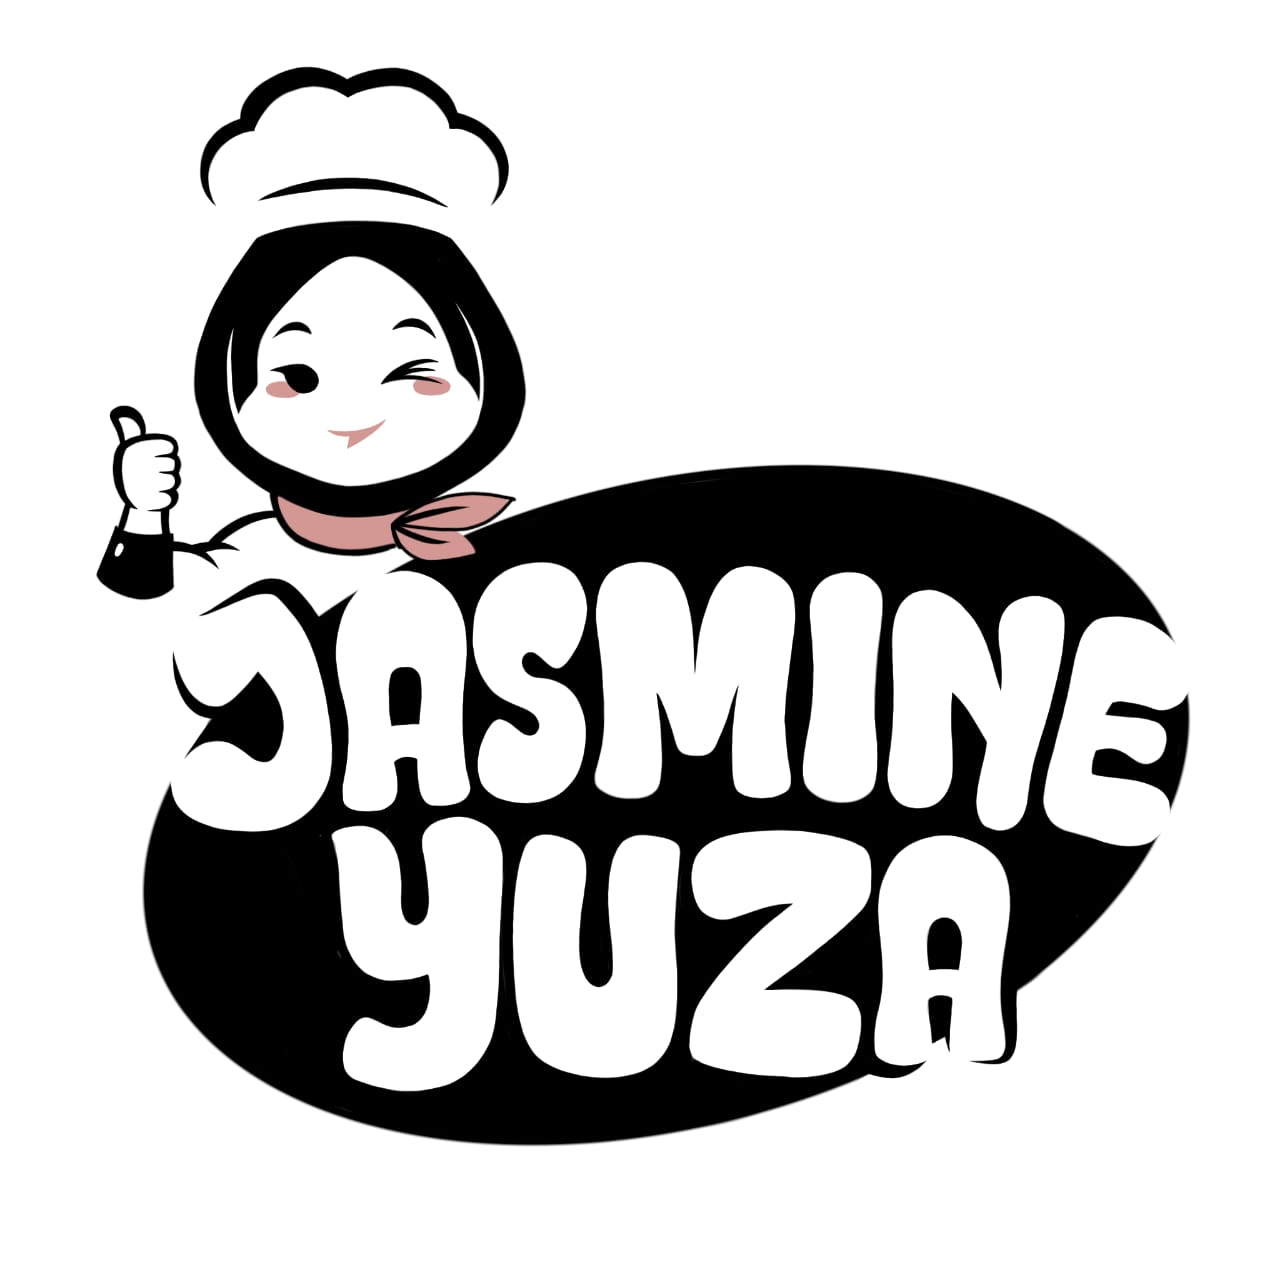 JASMINE YUZA